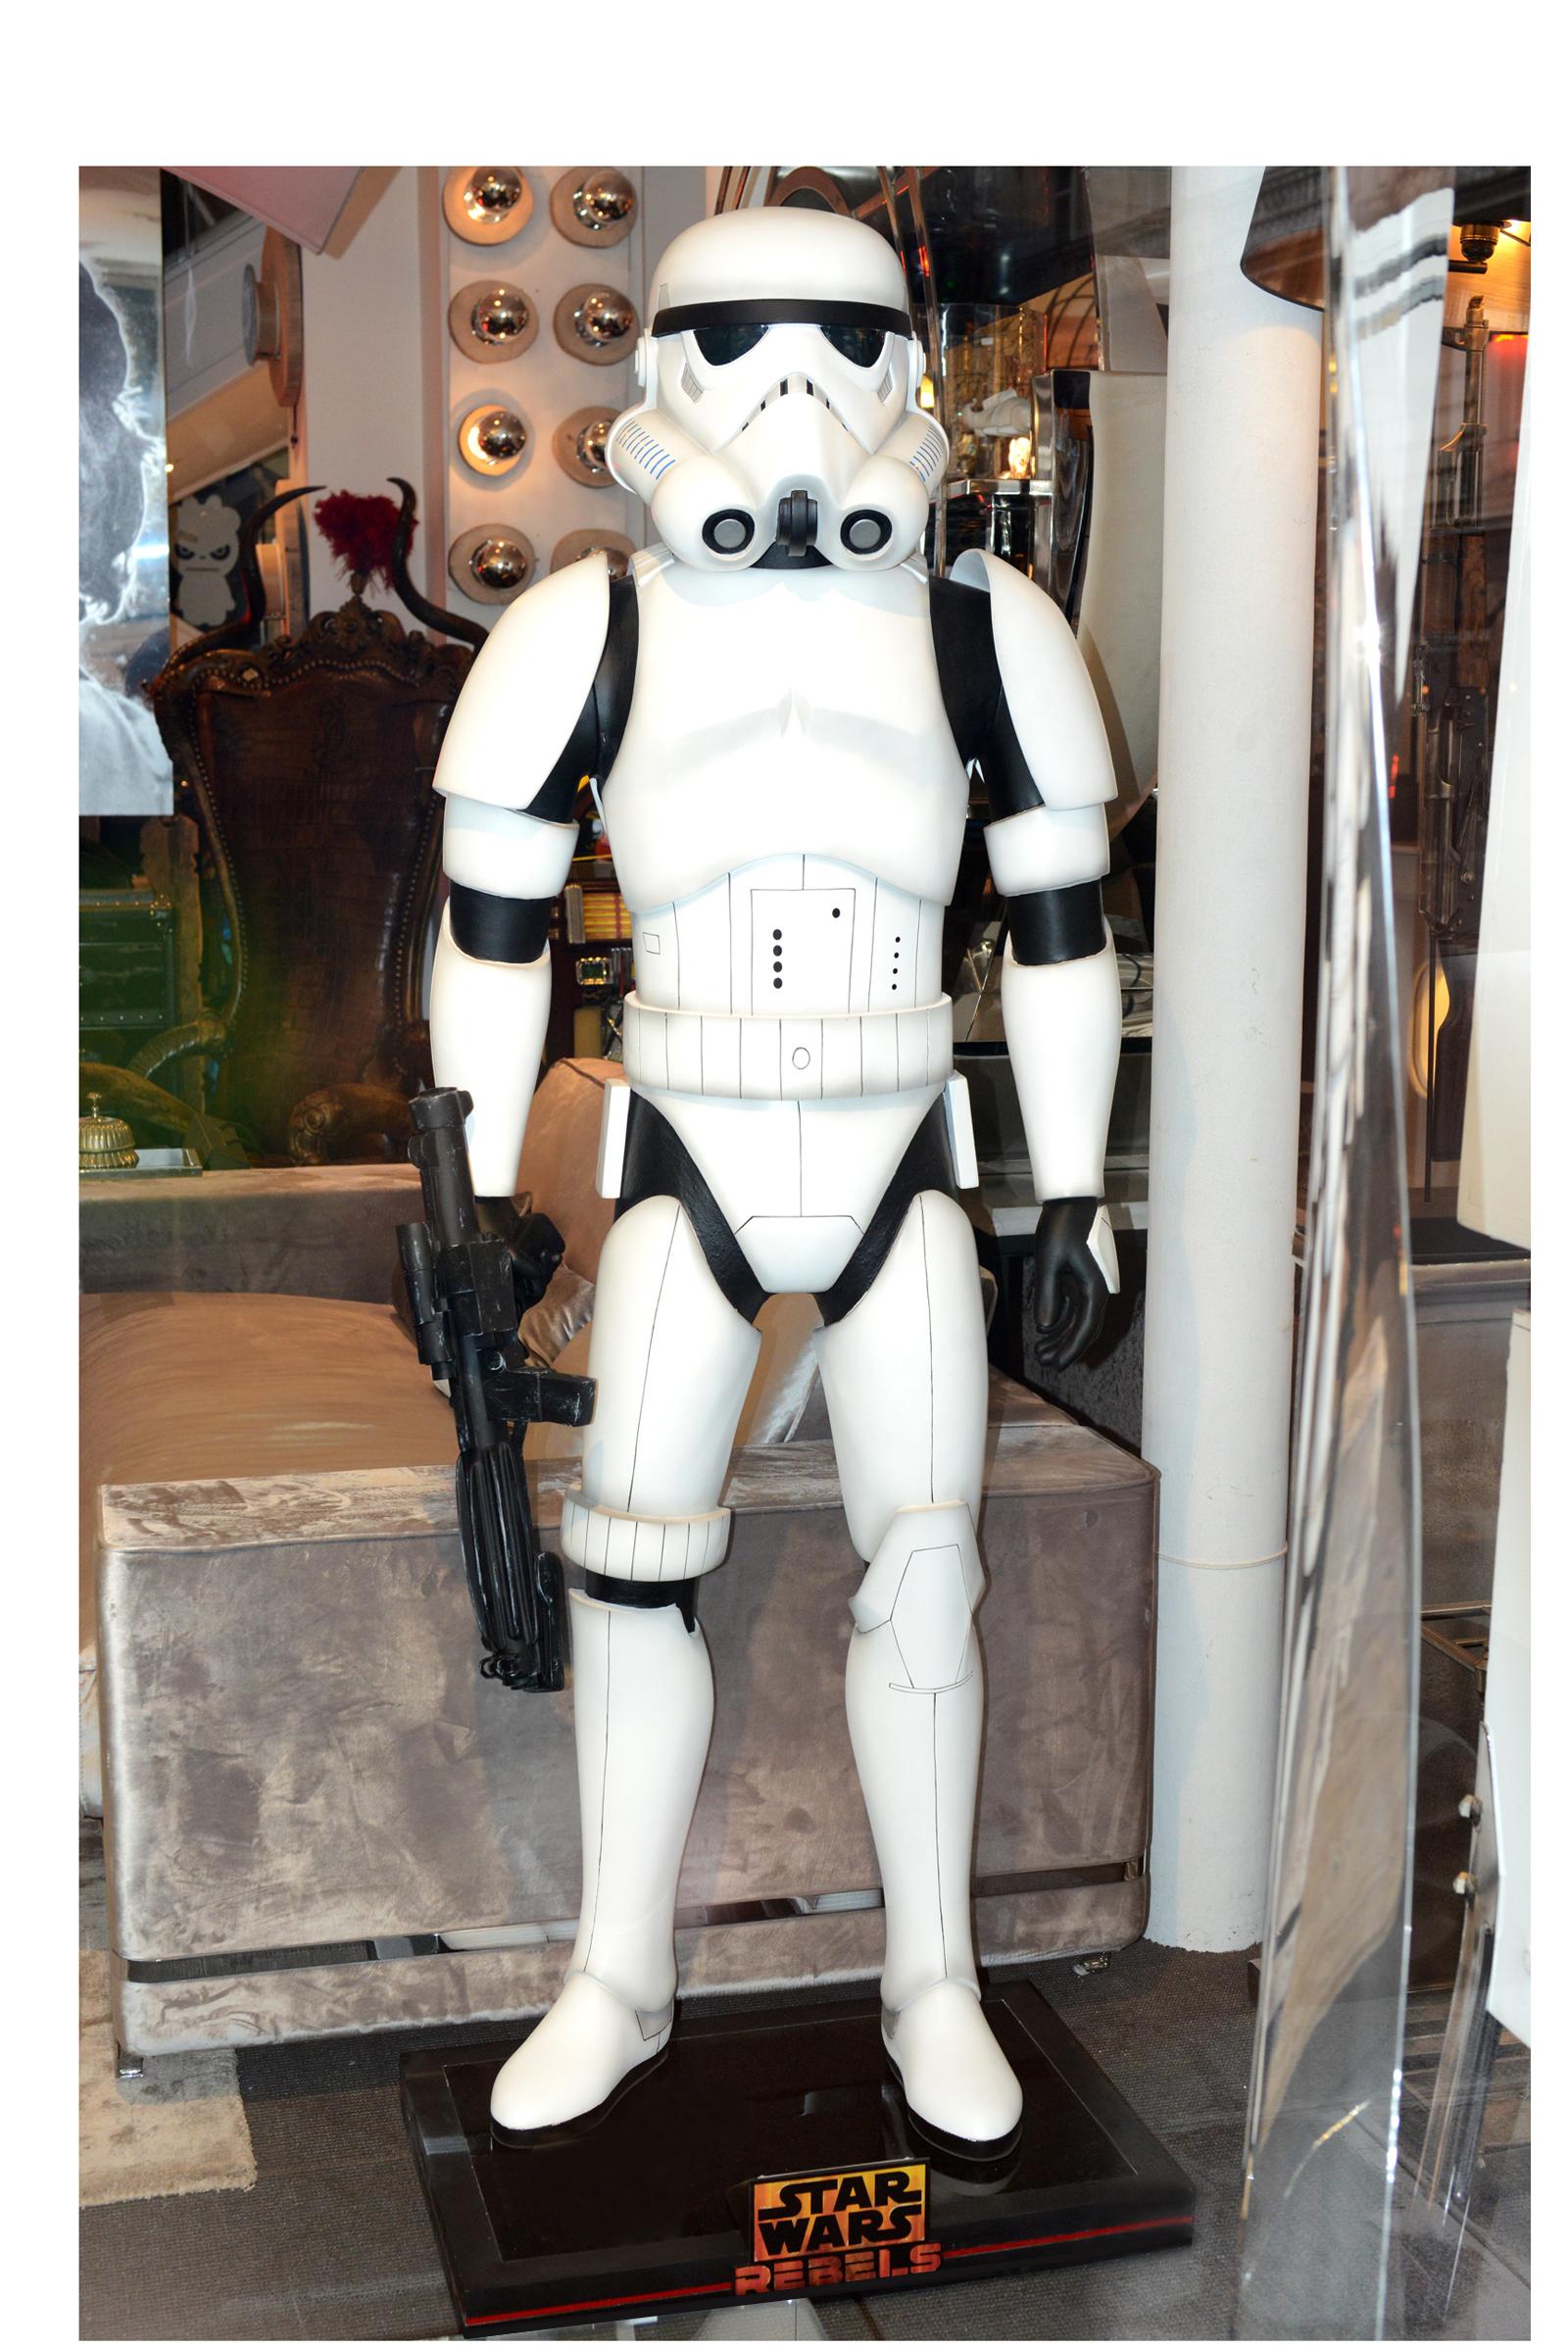 Stormtrooper mit geradem Arm, lebensgroß, lizenzierte Star Wars Figur,
Lucas-Film, in limitierter Auflage von 333 Stück. Aus Glasfaser.